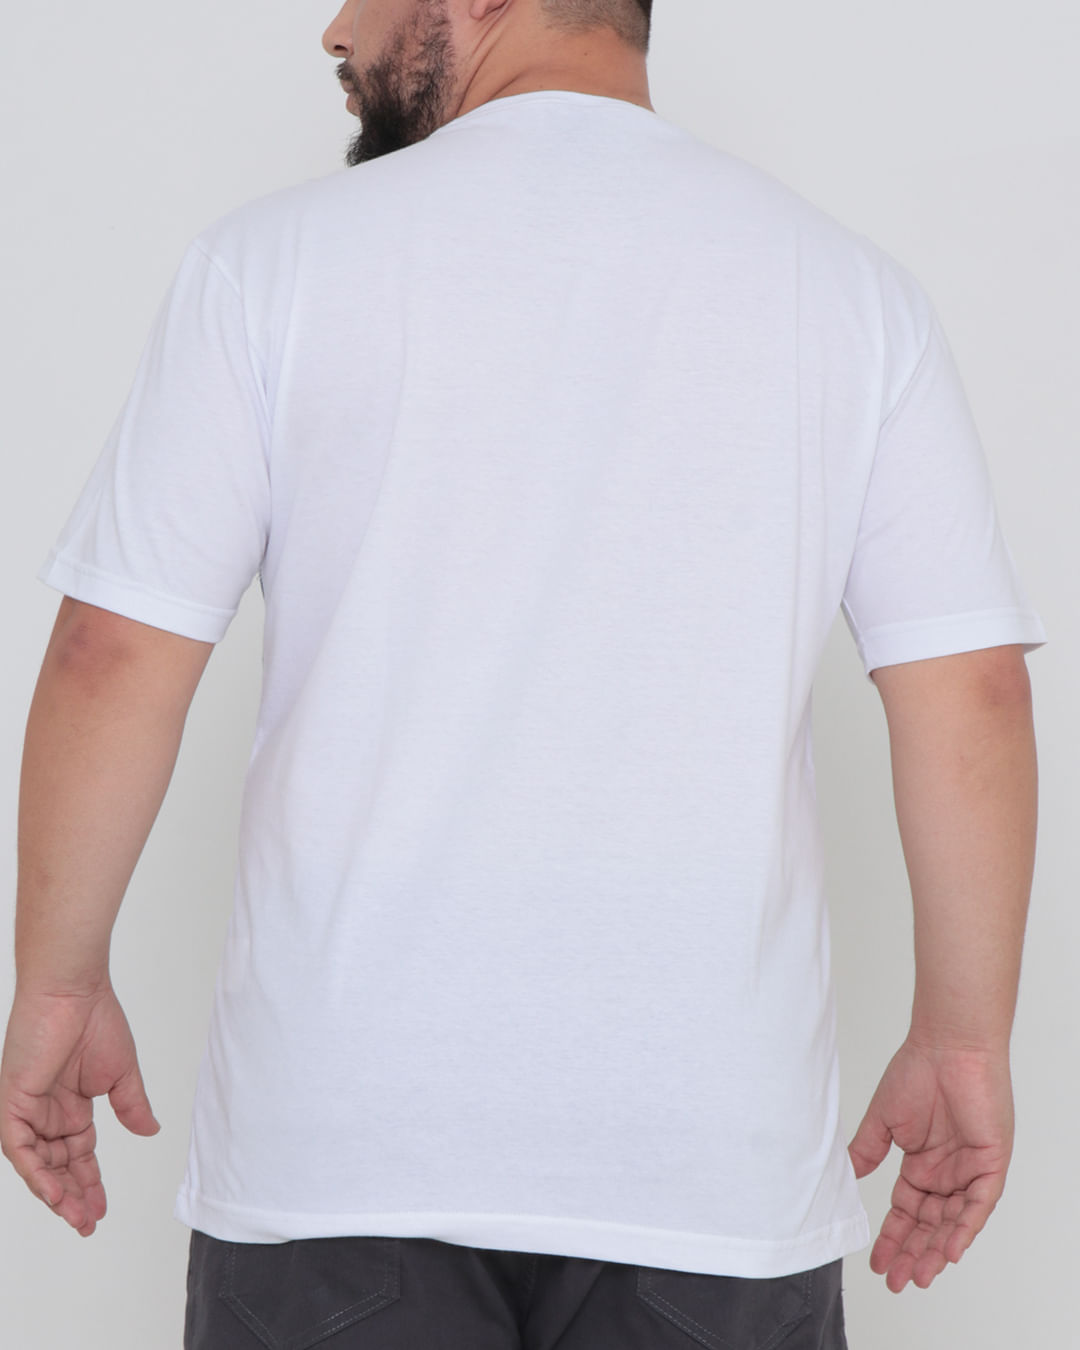 Camiseta-50011301-Basica-Over-Plus---Branco